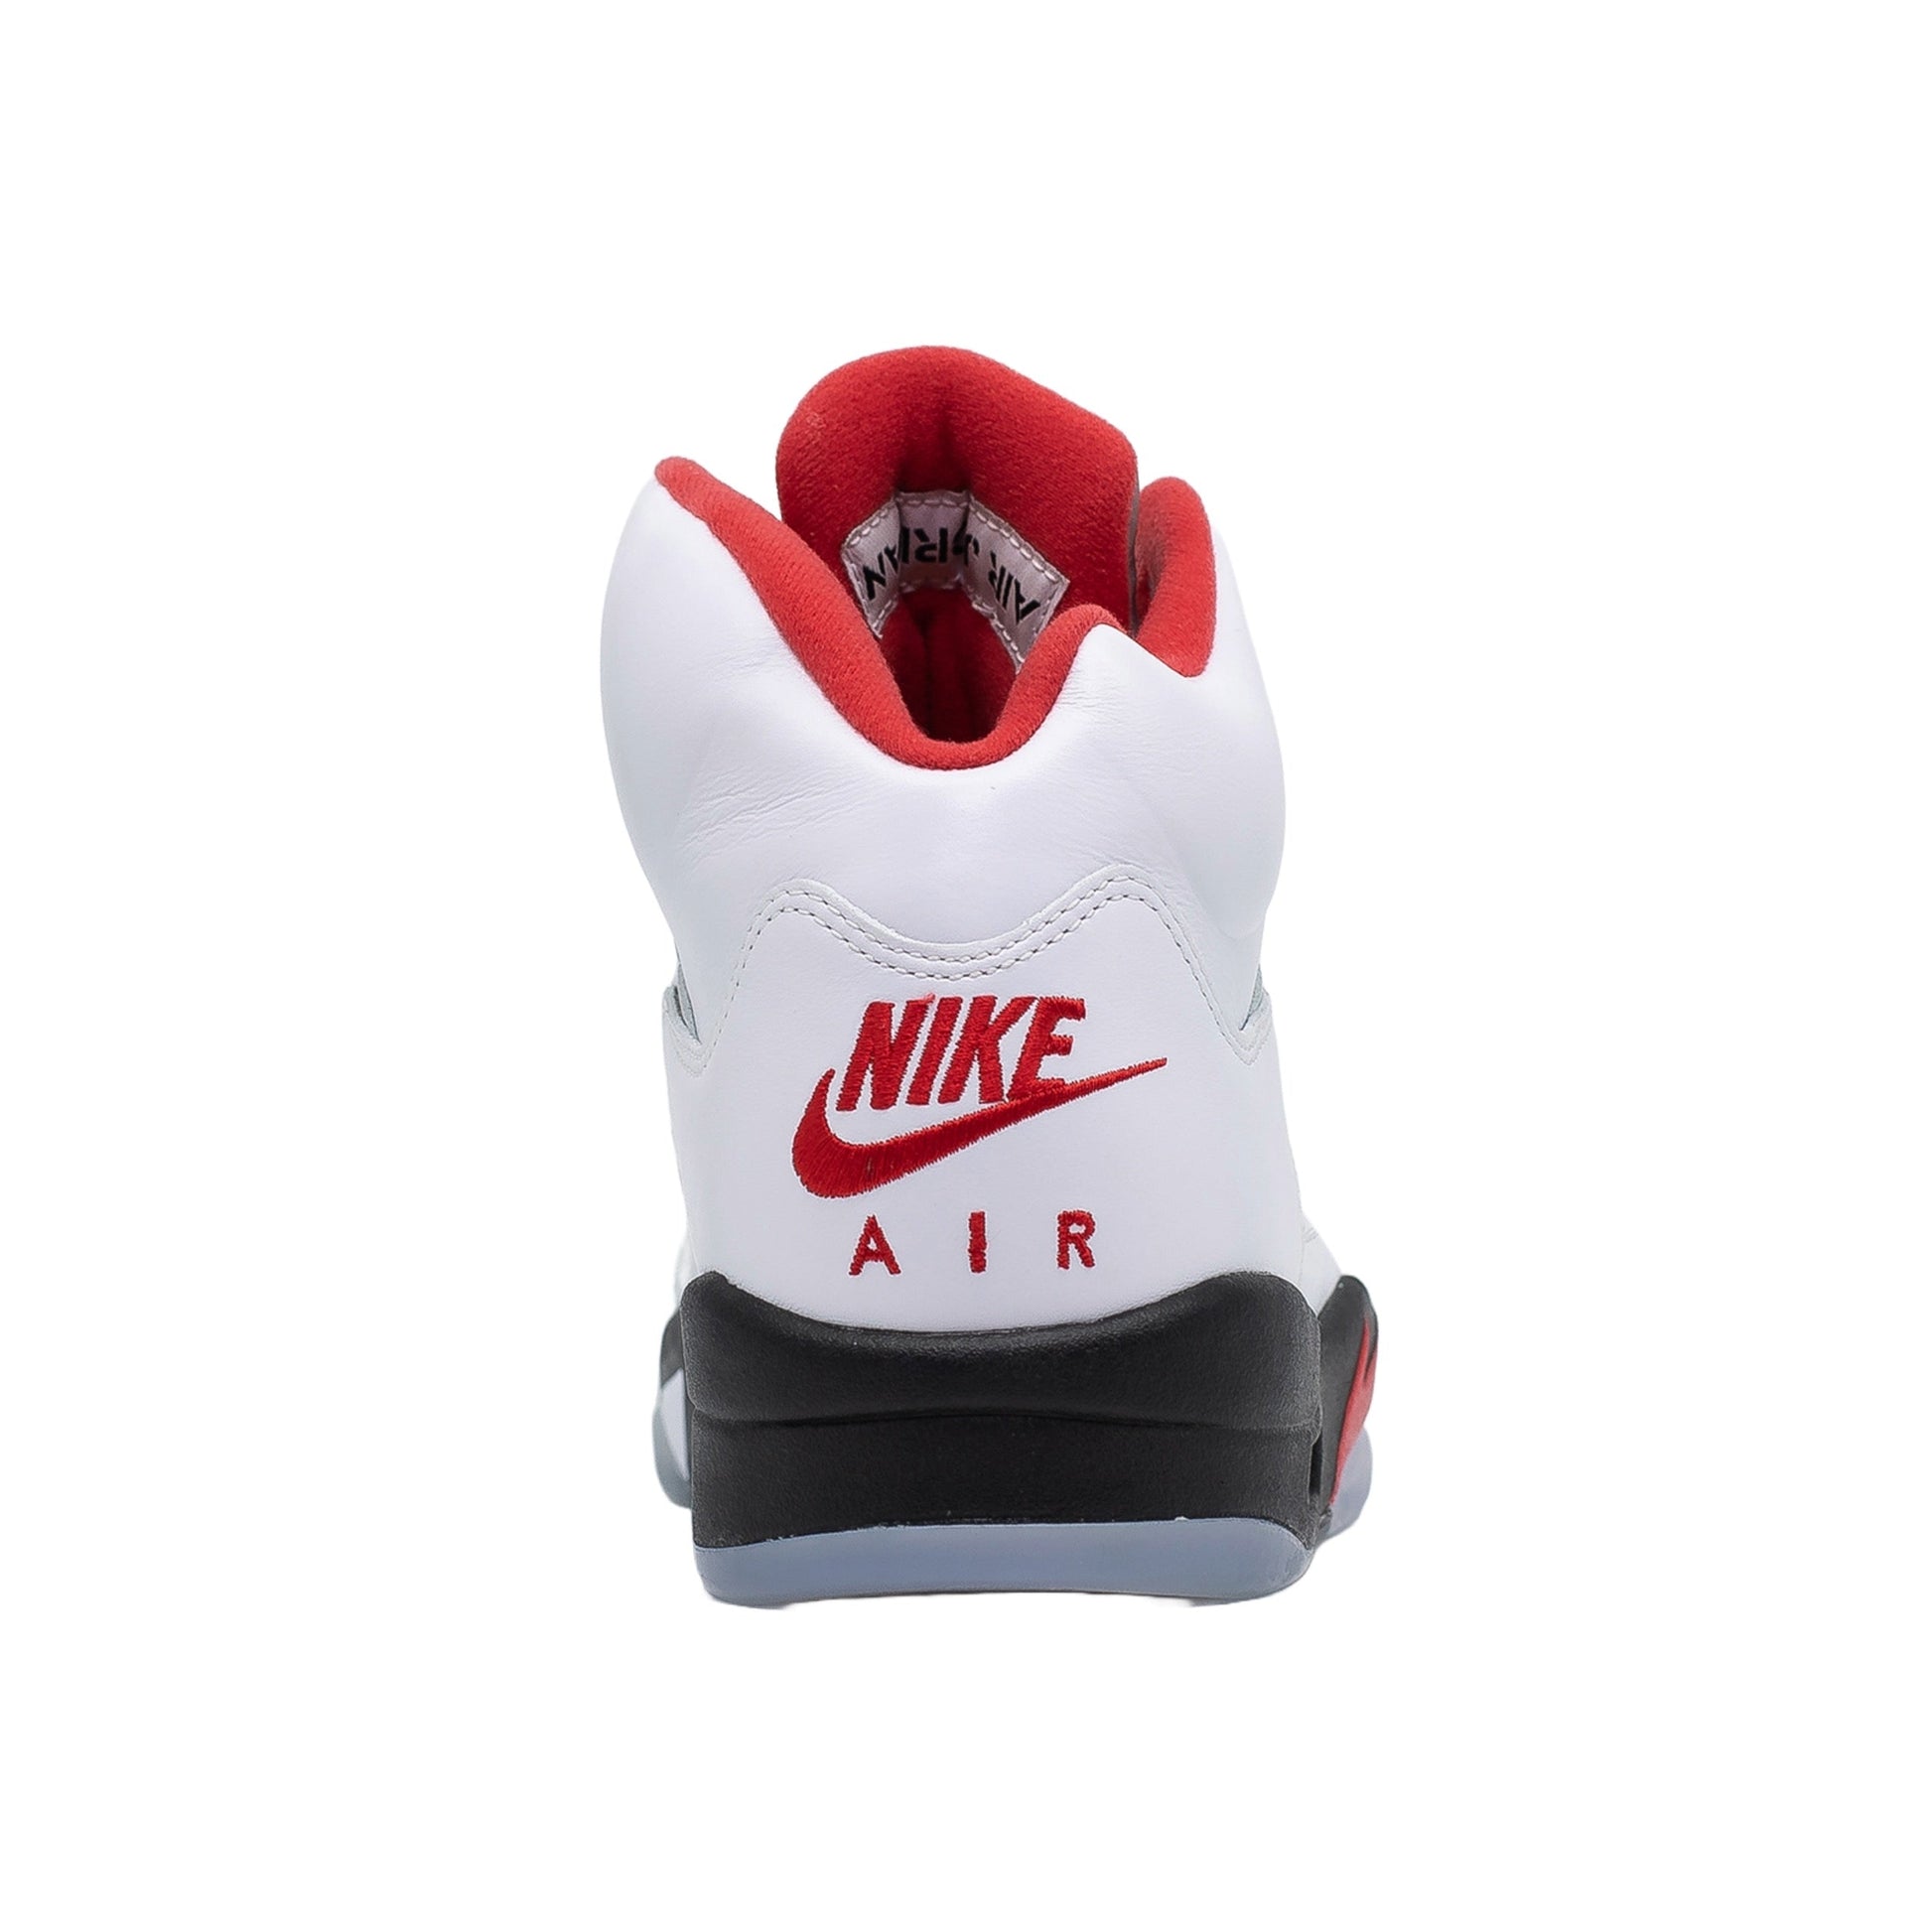 Air Jordan 5 (GS), Fire Red (2020)